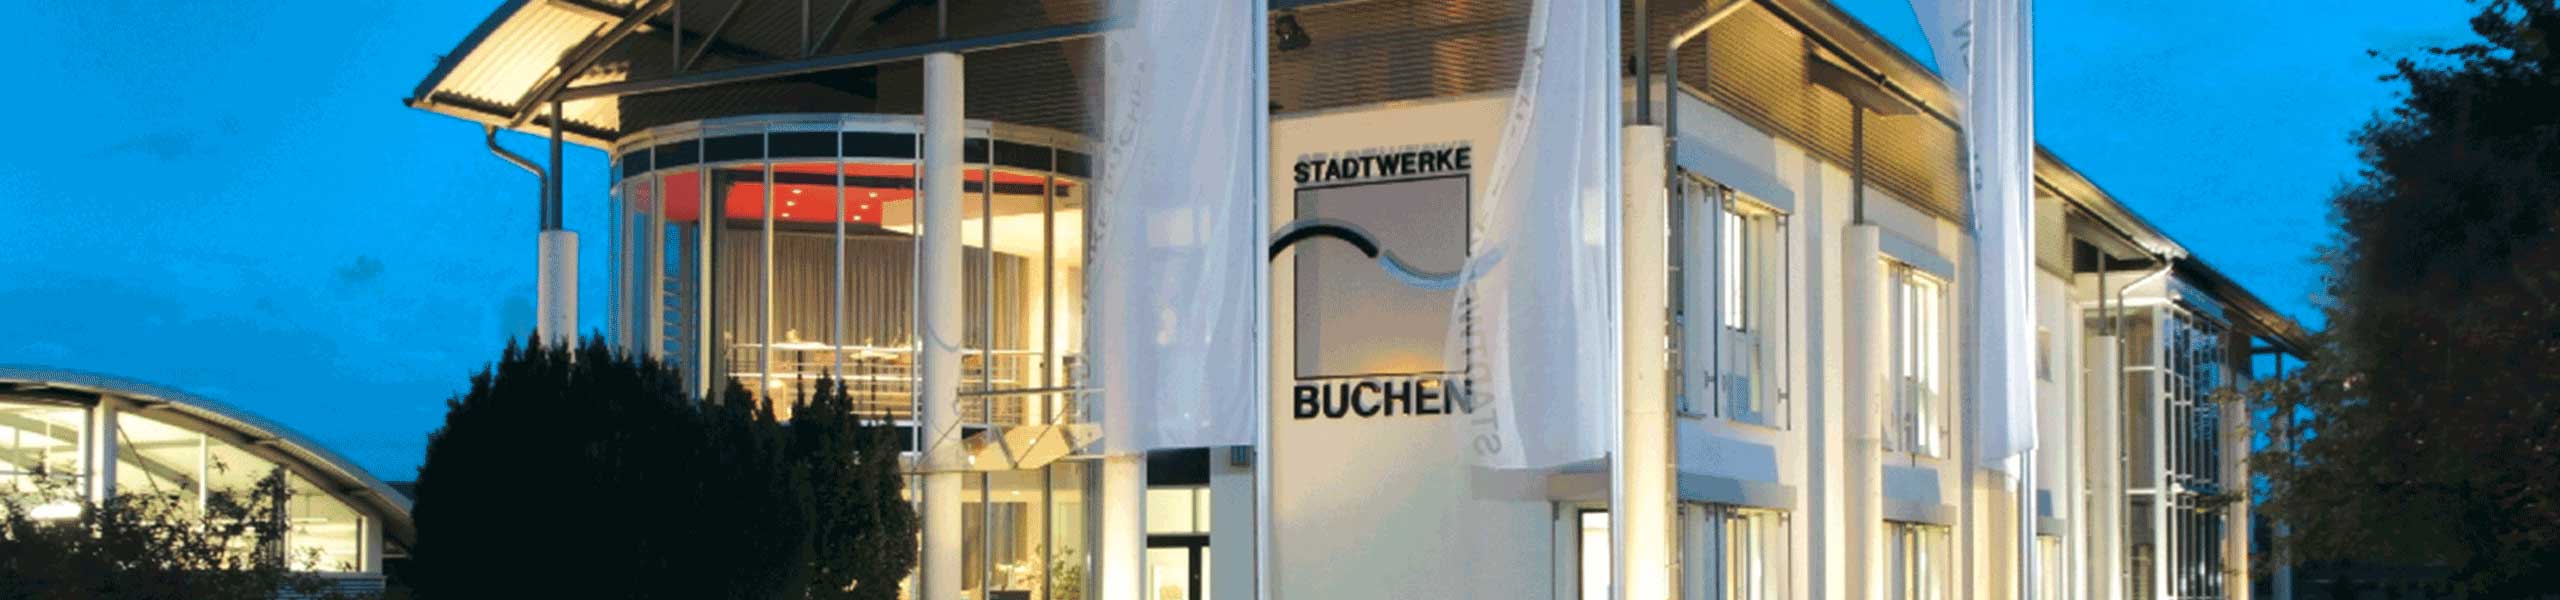 Stadtwerke Buchen GmbH & Co KG - Wasser